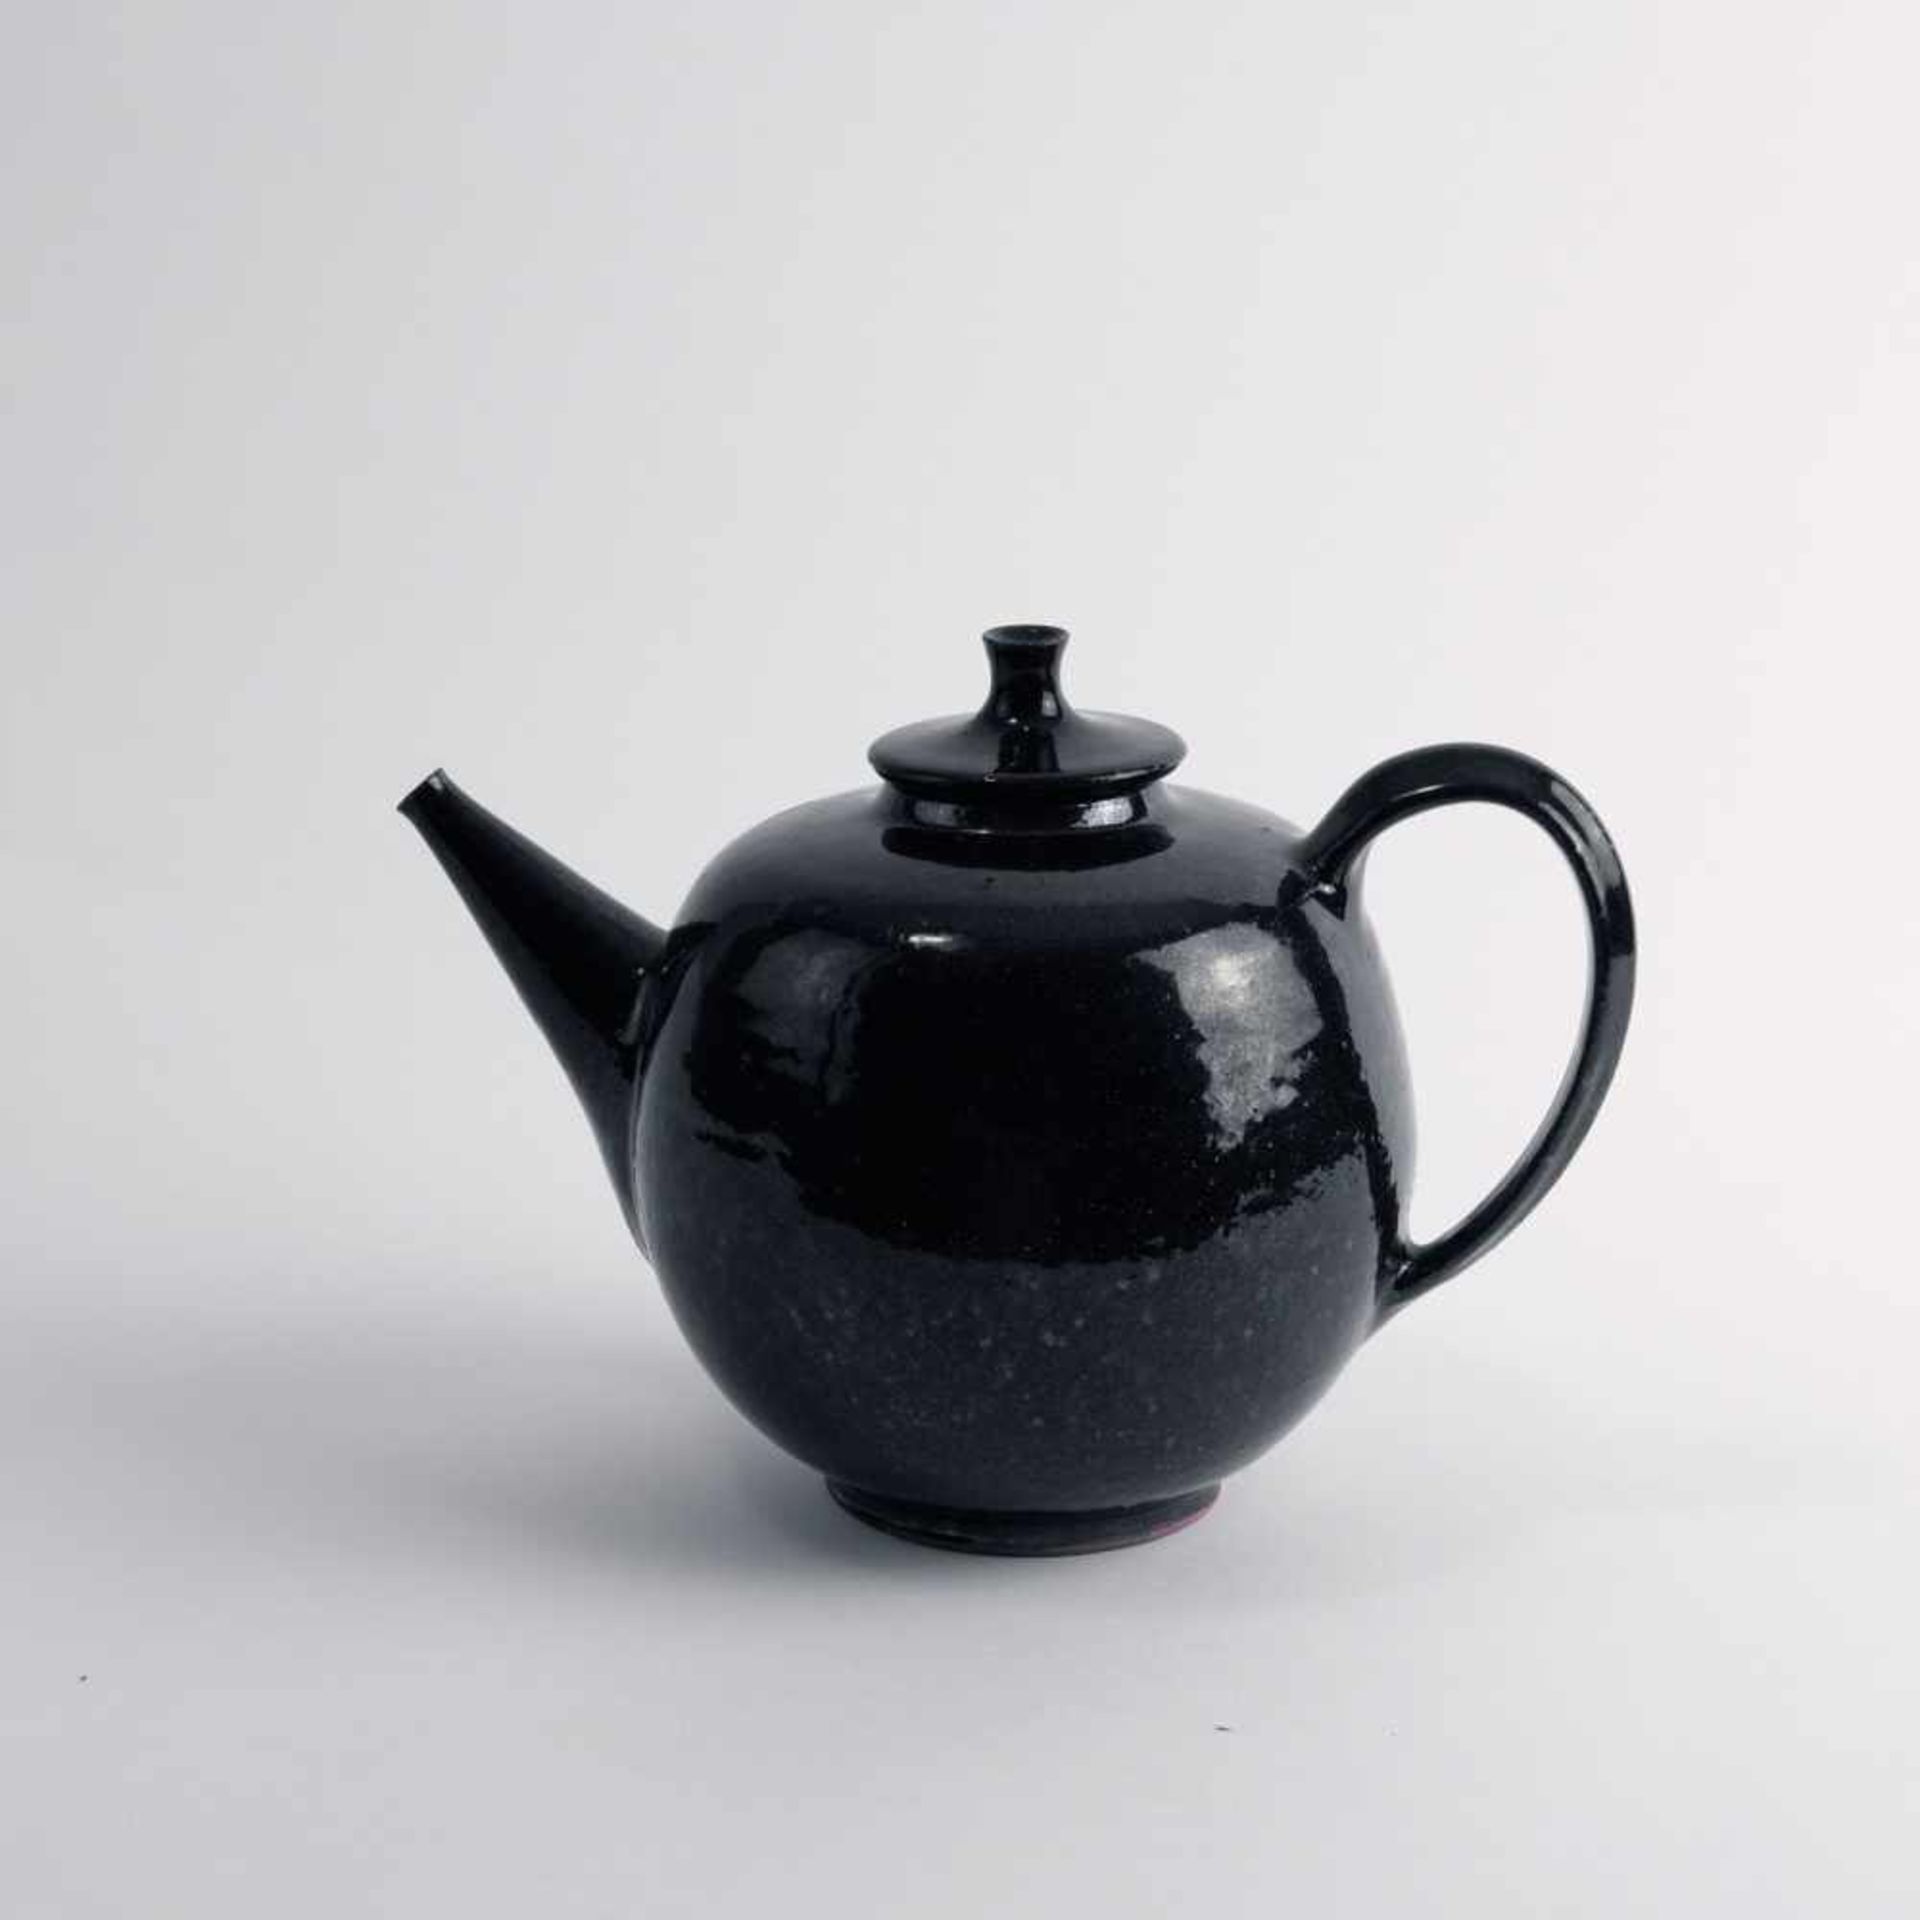 Hubert Griemert Teekanne, um 1950 H. 15,3 cm. Majolika, dunkelbraun pigmentiert glasiert. Bez.: